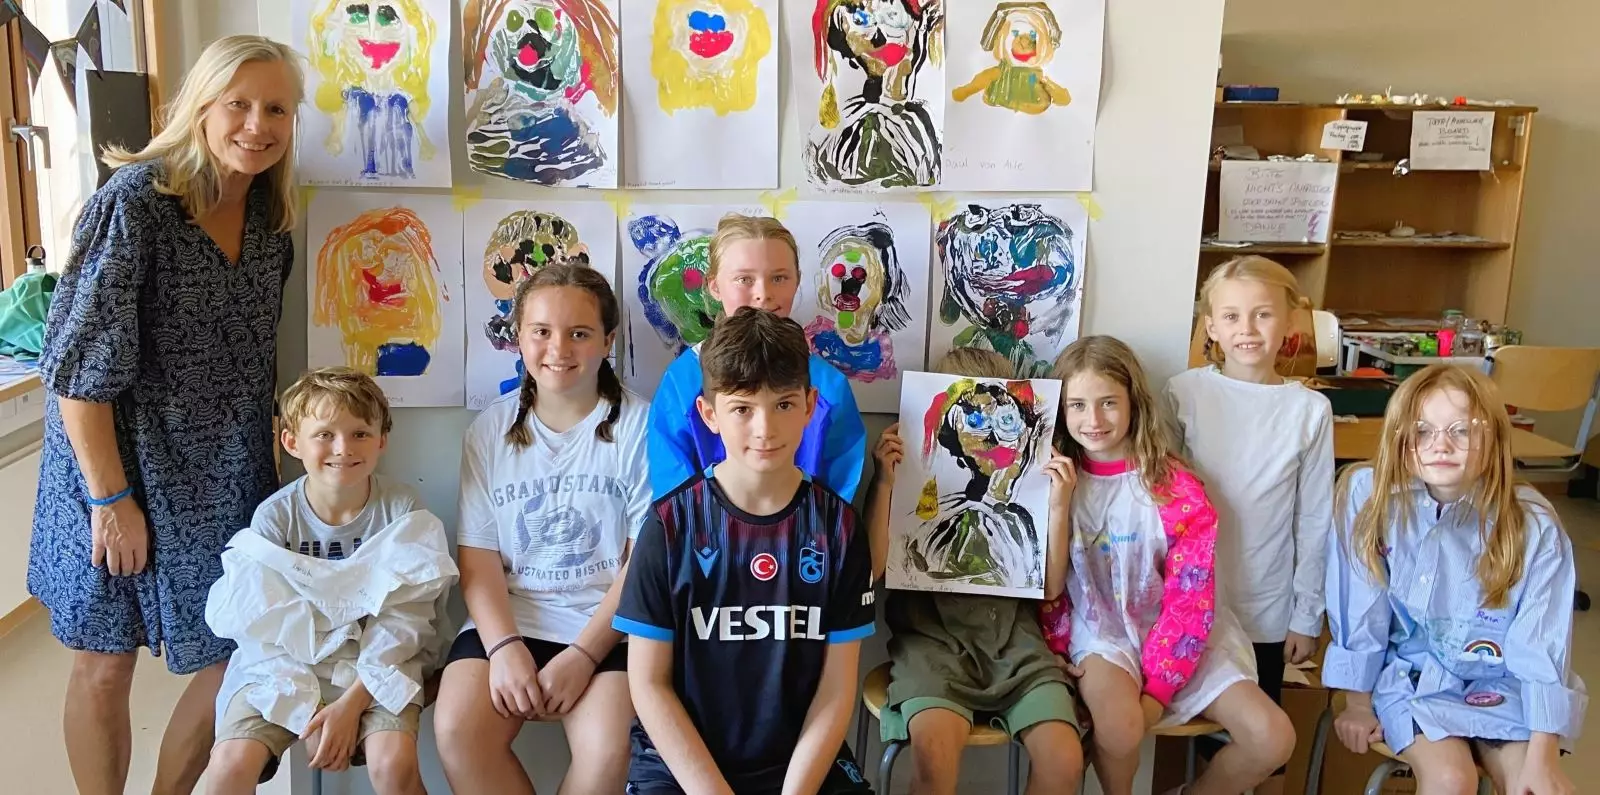 Die Künstlerin Antje Flotho arbeitet einmal wöchentlich zwei Stunden mit einer Gruppe von Kindern des 3. und 4. Schuljahres. Die Werke der kleinen Künstler werden am Schuljahresende in einer großen Ausstellung präsentiert. Foto: privat